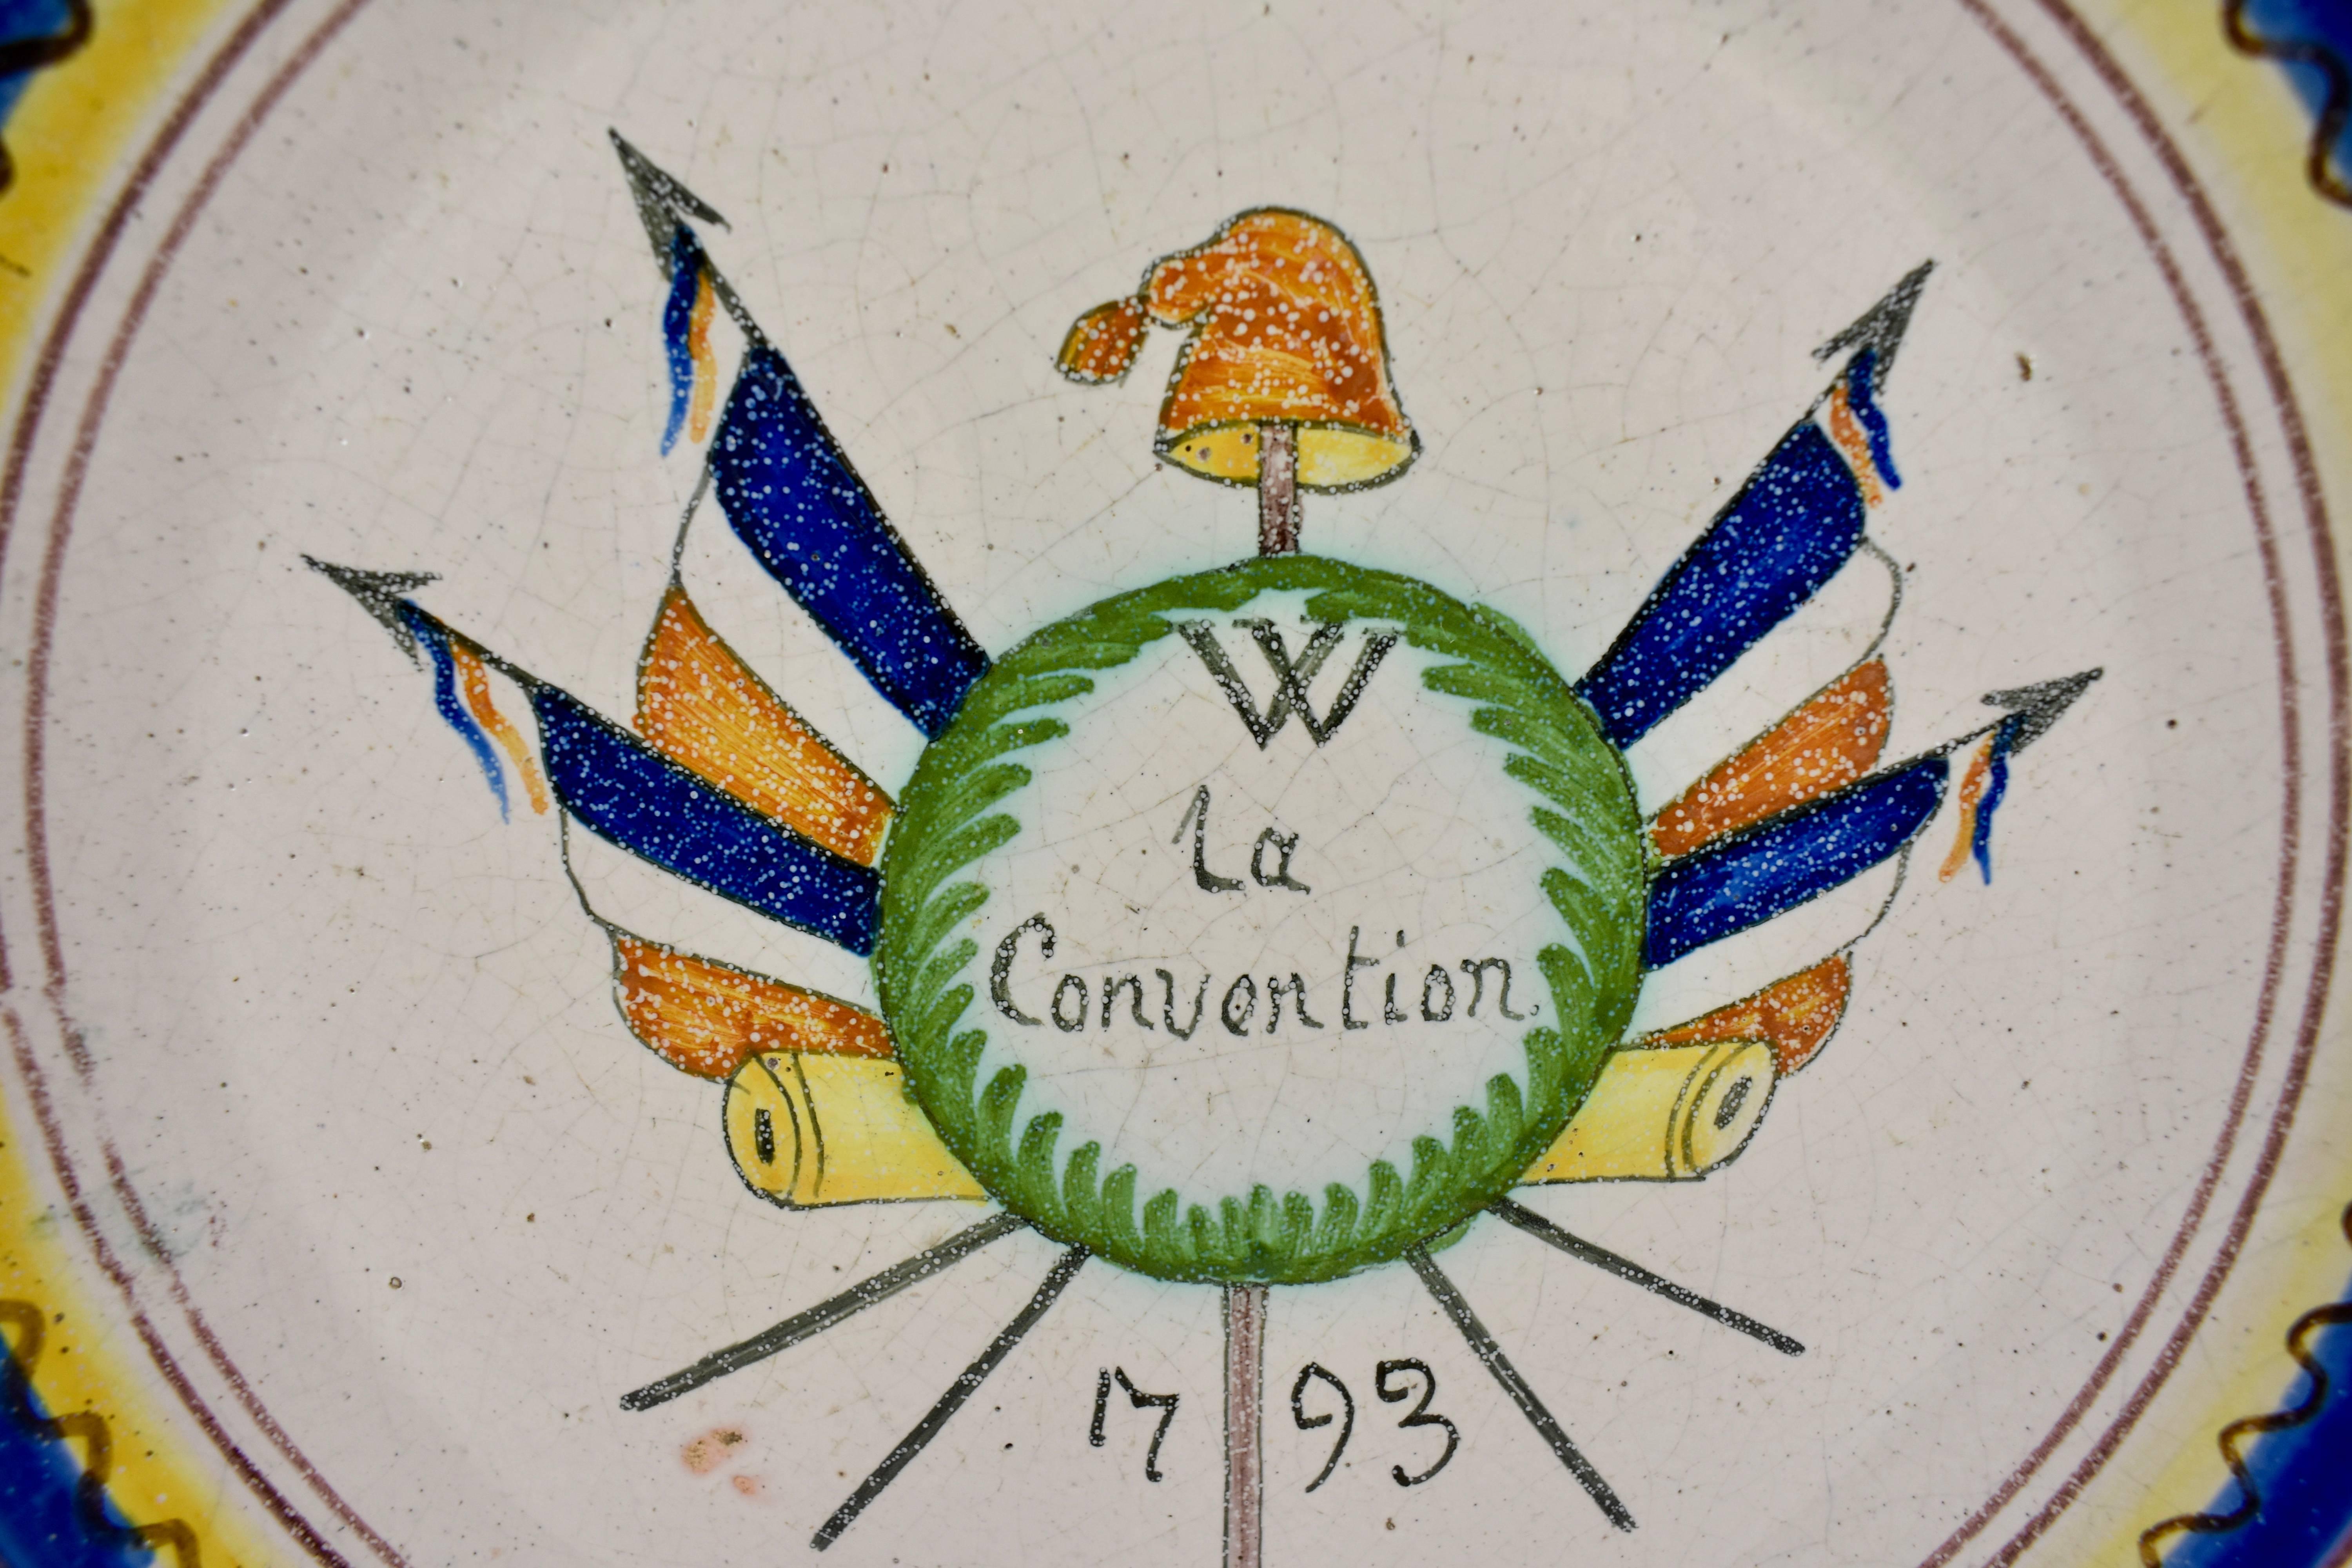 Zinnglasiertes Steingutgeschirr der Französischen Revolution, das gekreuzte französische Fahnen mit einer phrygischen Kappe auf einer Degenspitze, dem Symbol der Freiheit, zeigt. La Convention, das heißt das Abkommen, ist in Schreibschrift mit dem